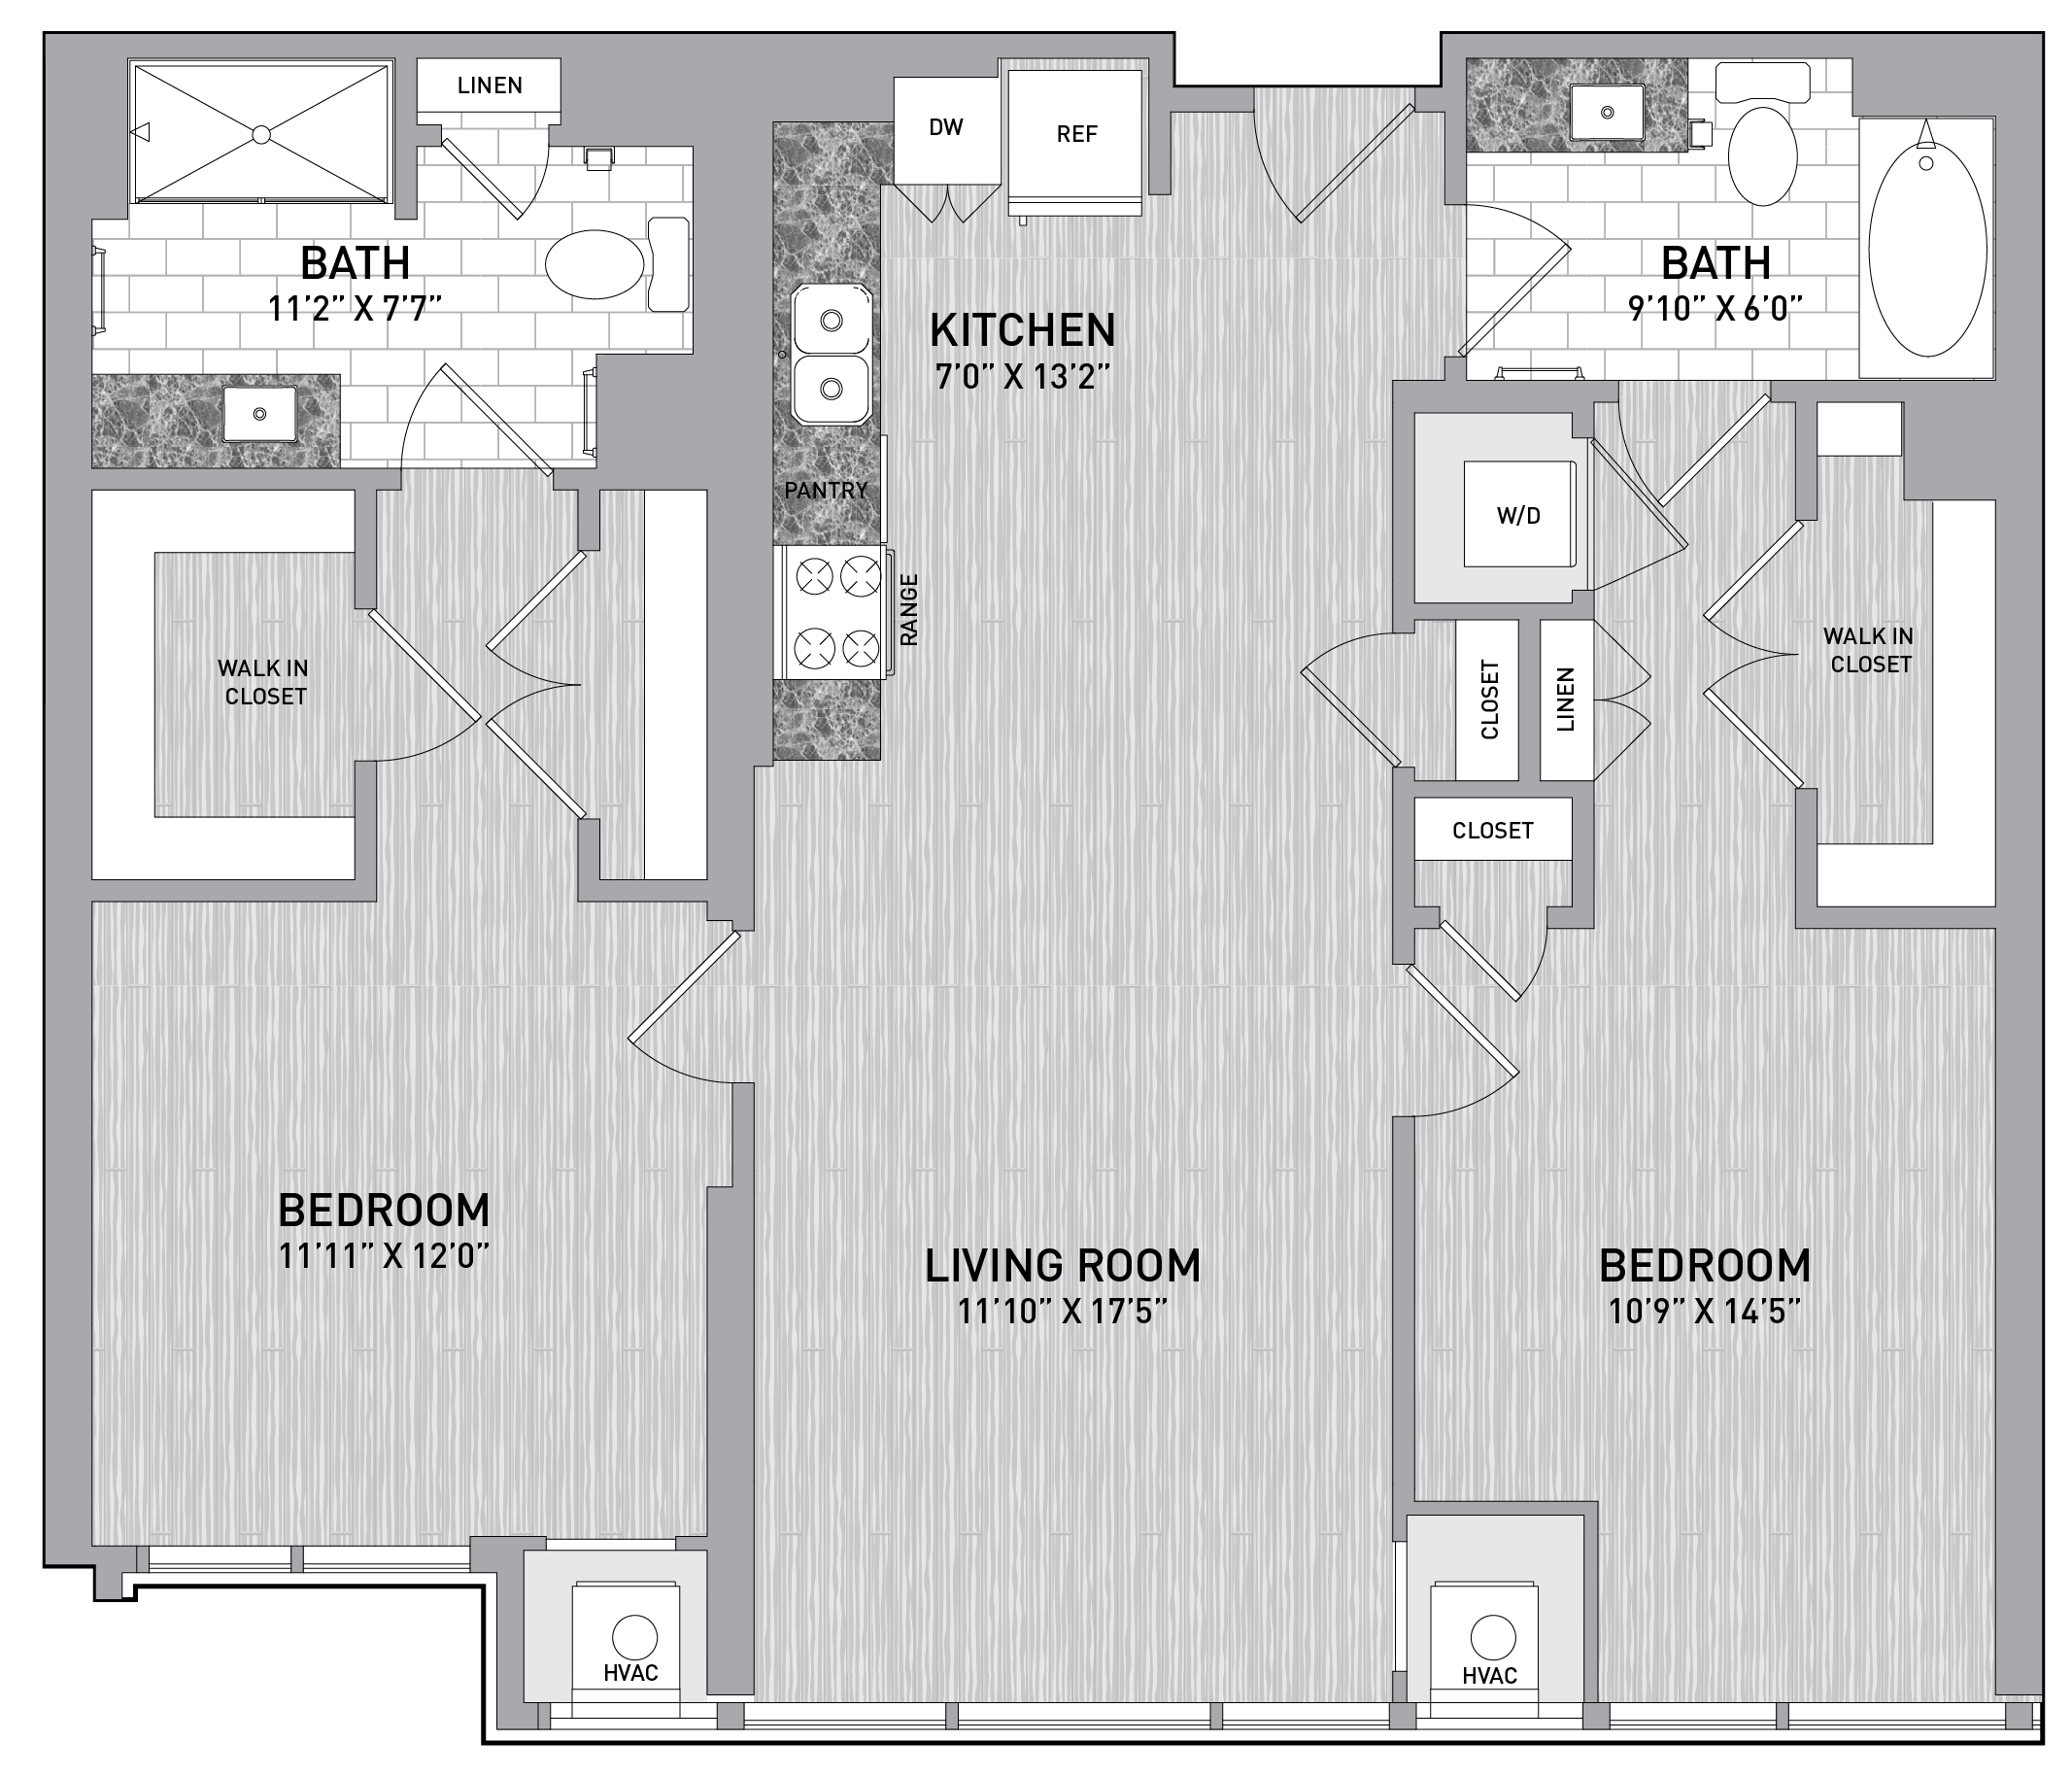 floorplan image of unit id 0818